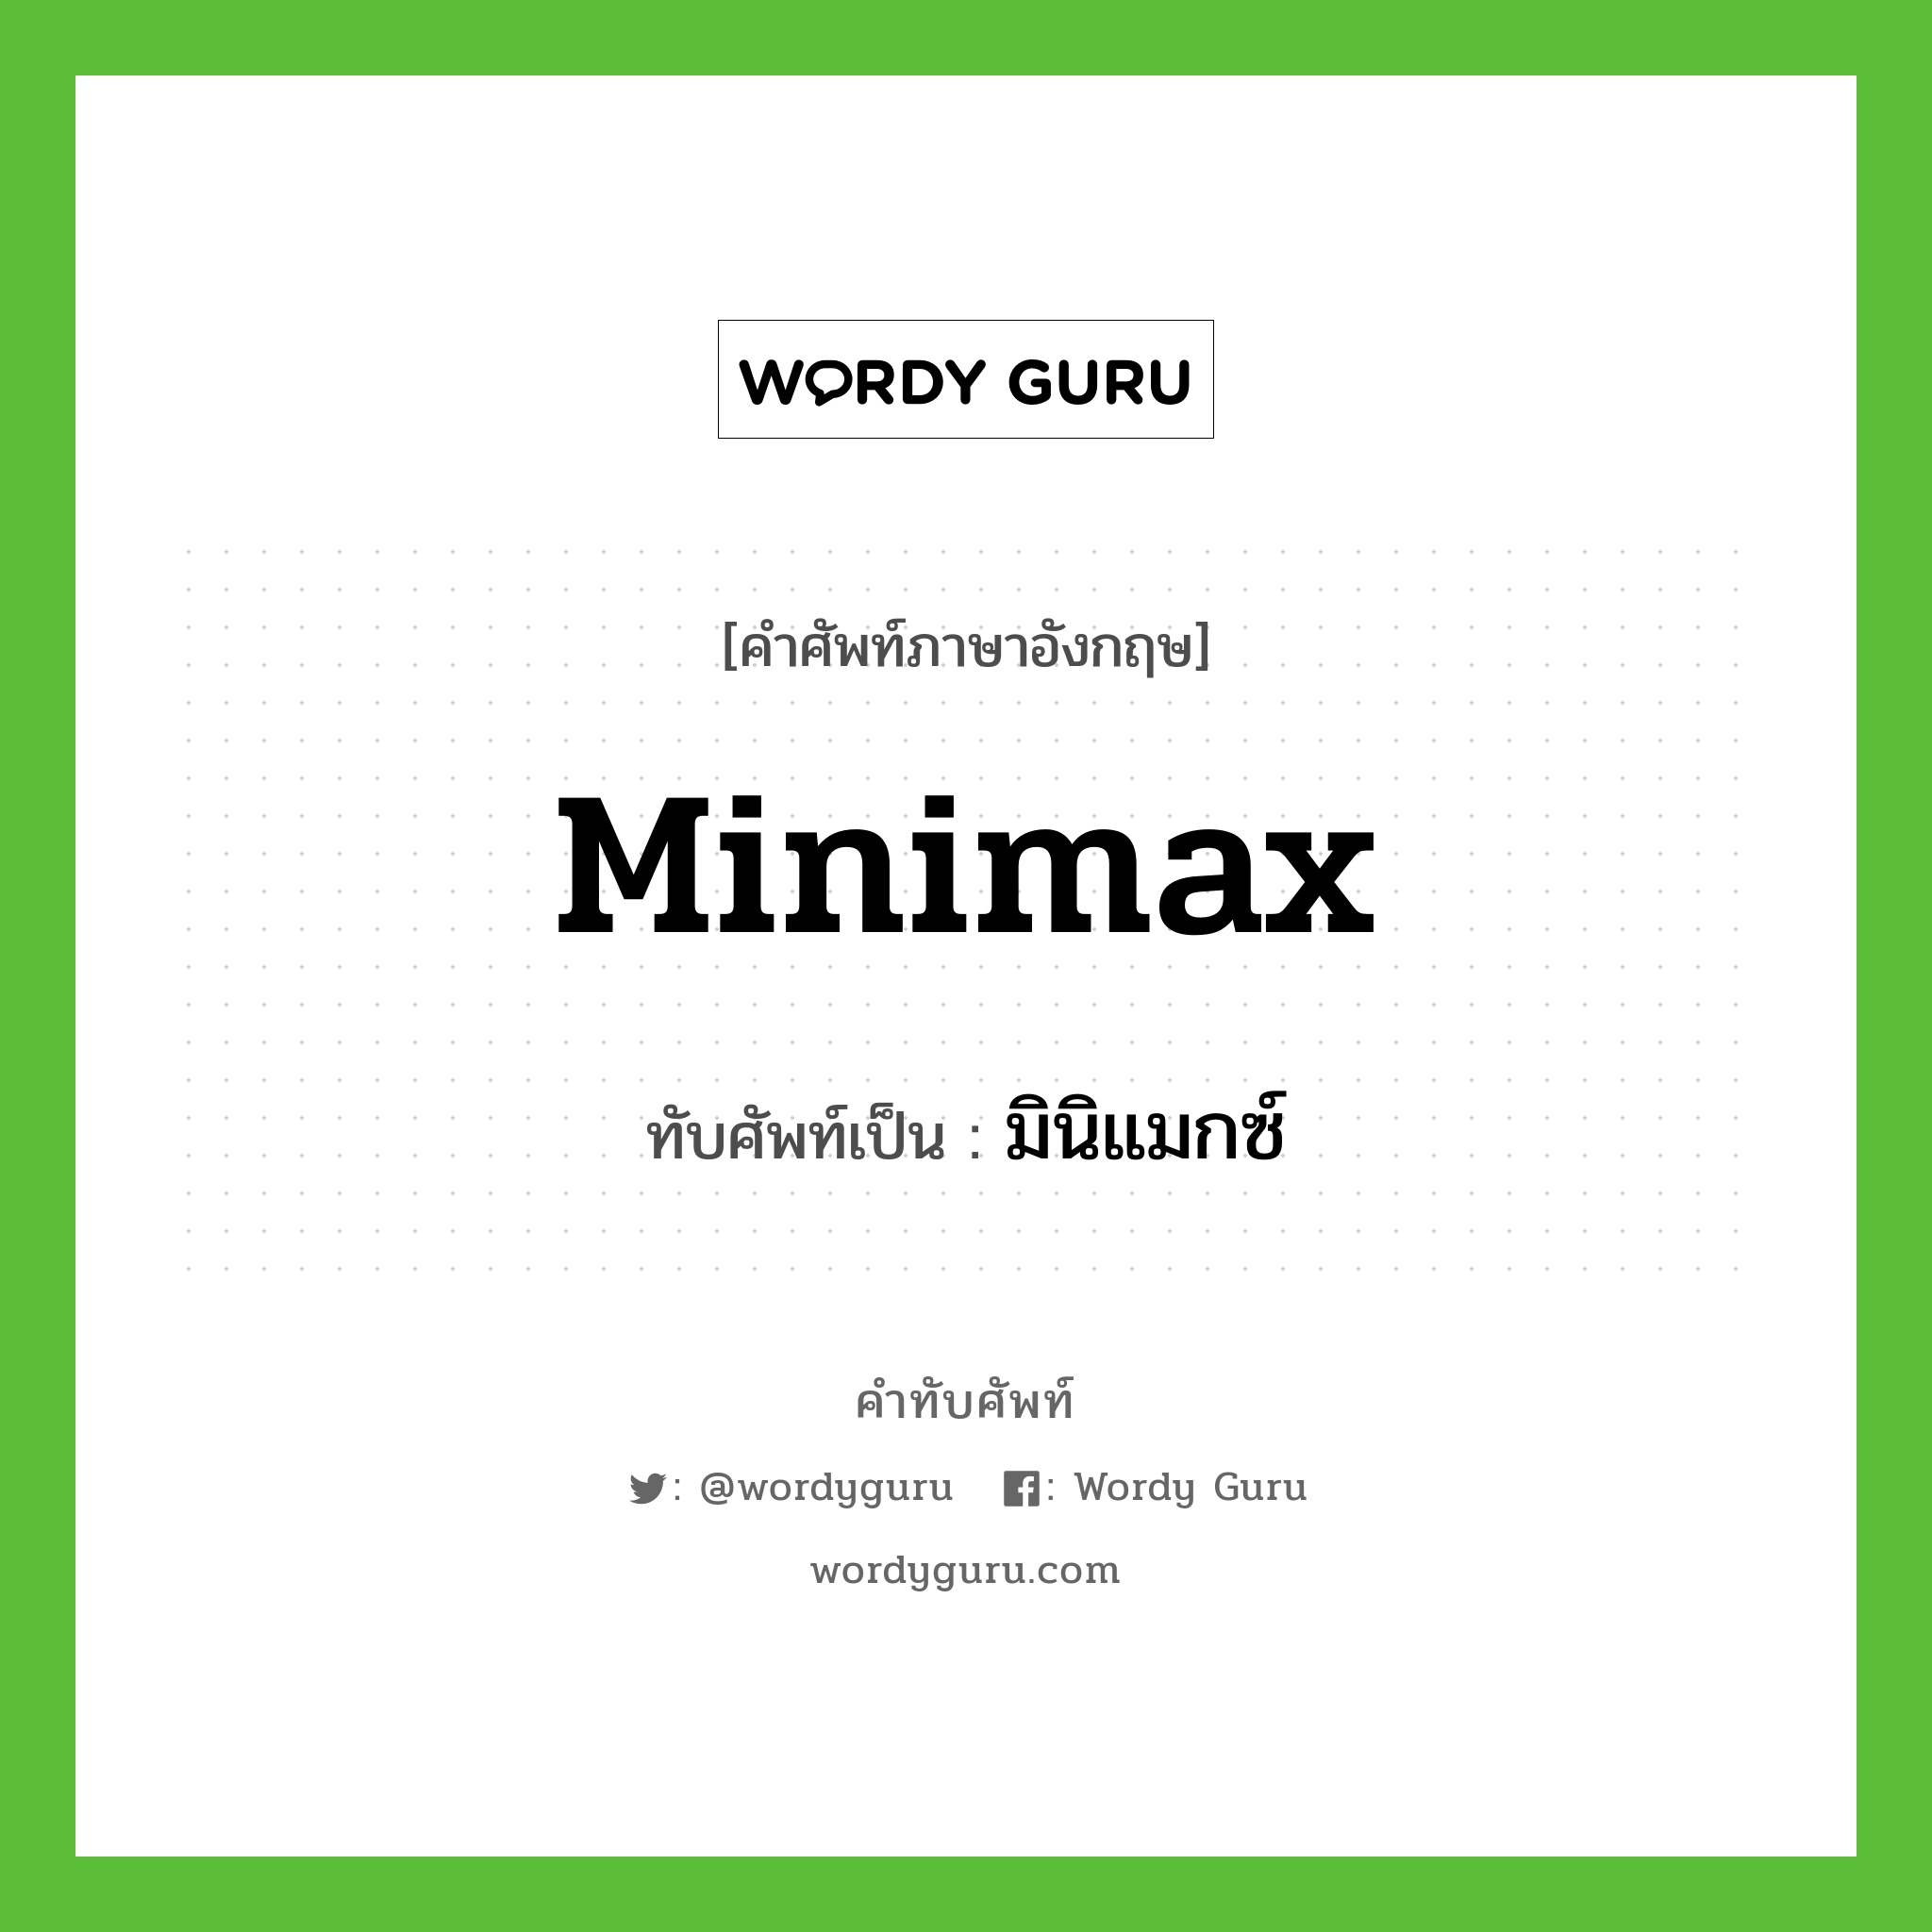 มินิแมกซ์ เขียนอย่างไร?, คำศัพท์ภาษาอังกฤษ มินิแมกซ์ ทับศัพท์เป็น minimax